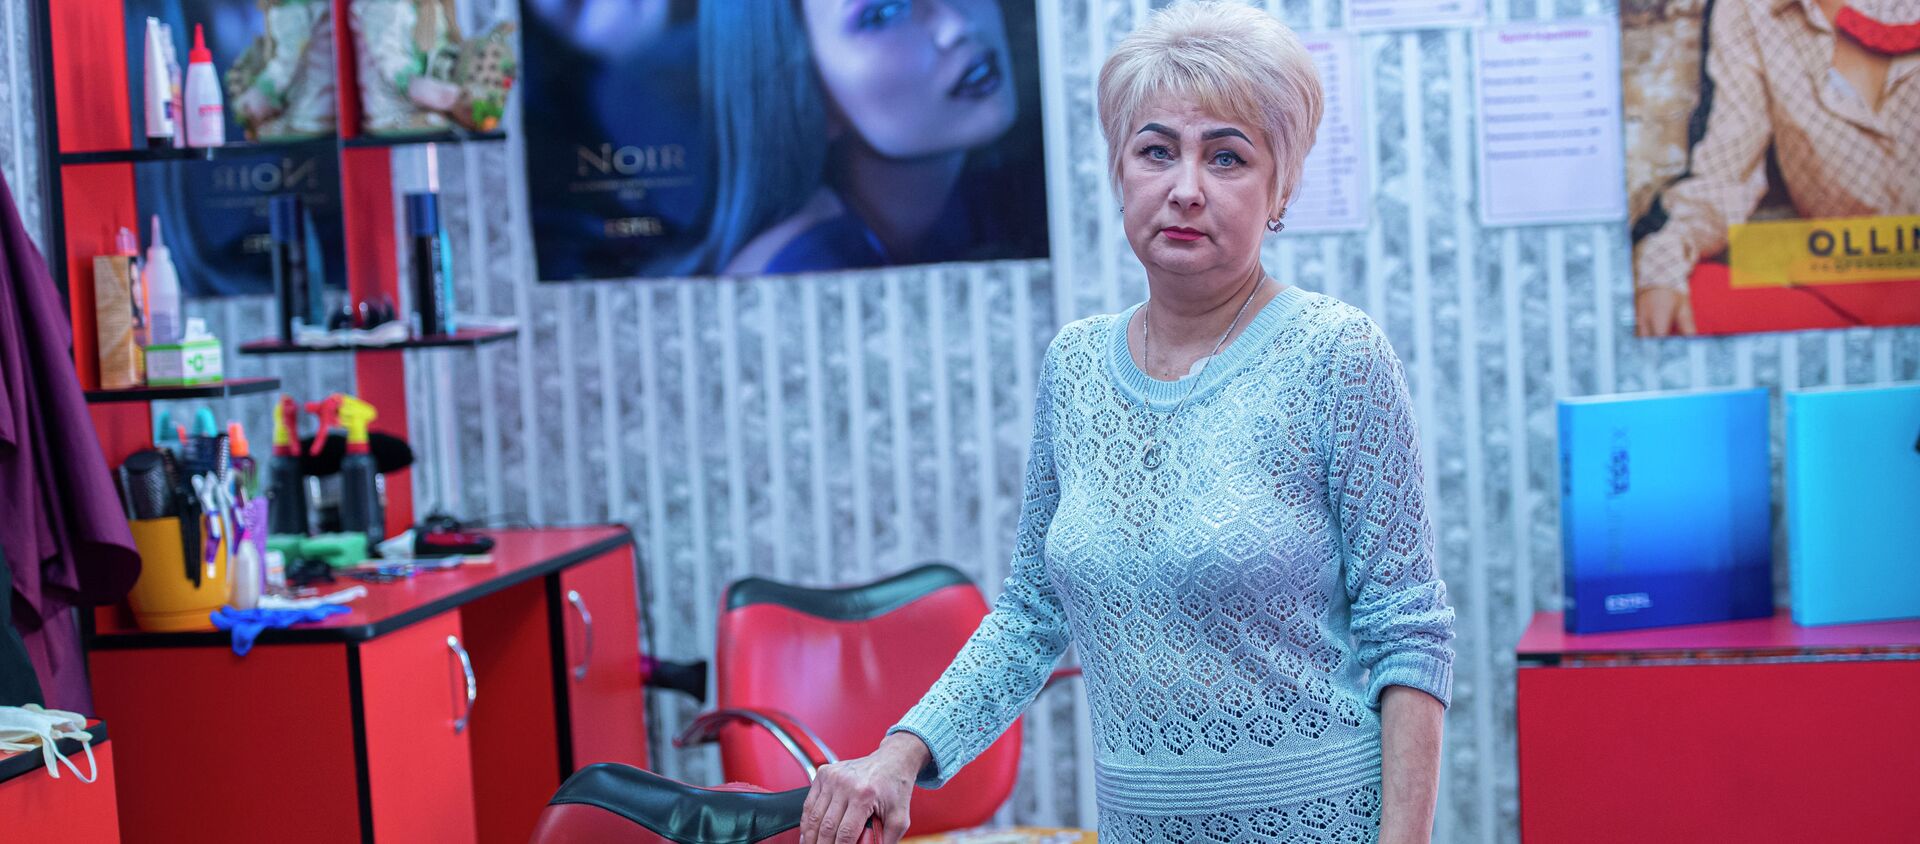 Бишкекский парикмахер Ирина Глущенко в своем салоне - Sputnik Кыргызстан, 1920, 07.04.2021